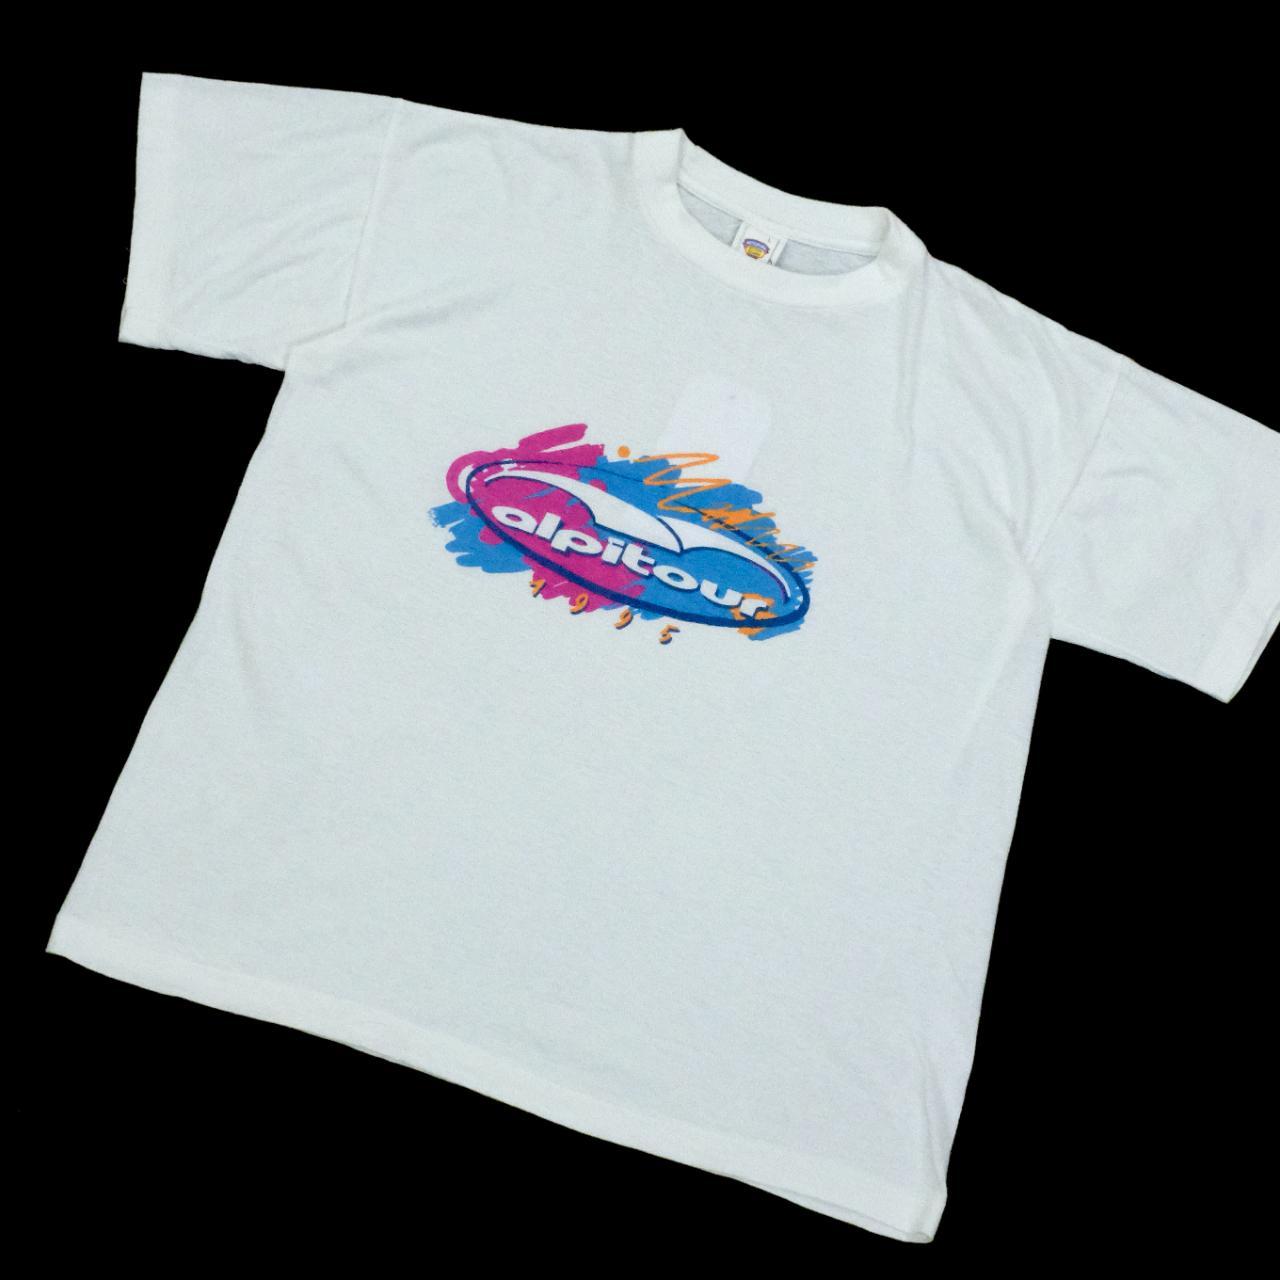 Alpitour 1995 T-shirt